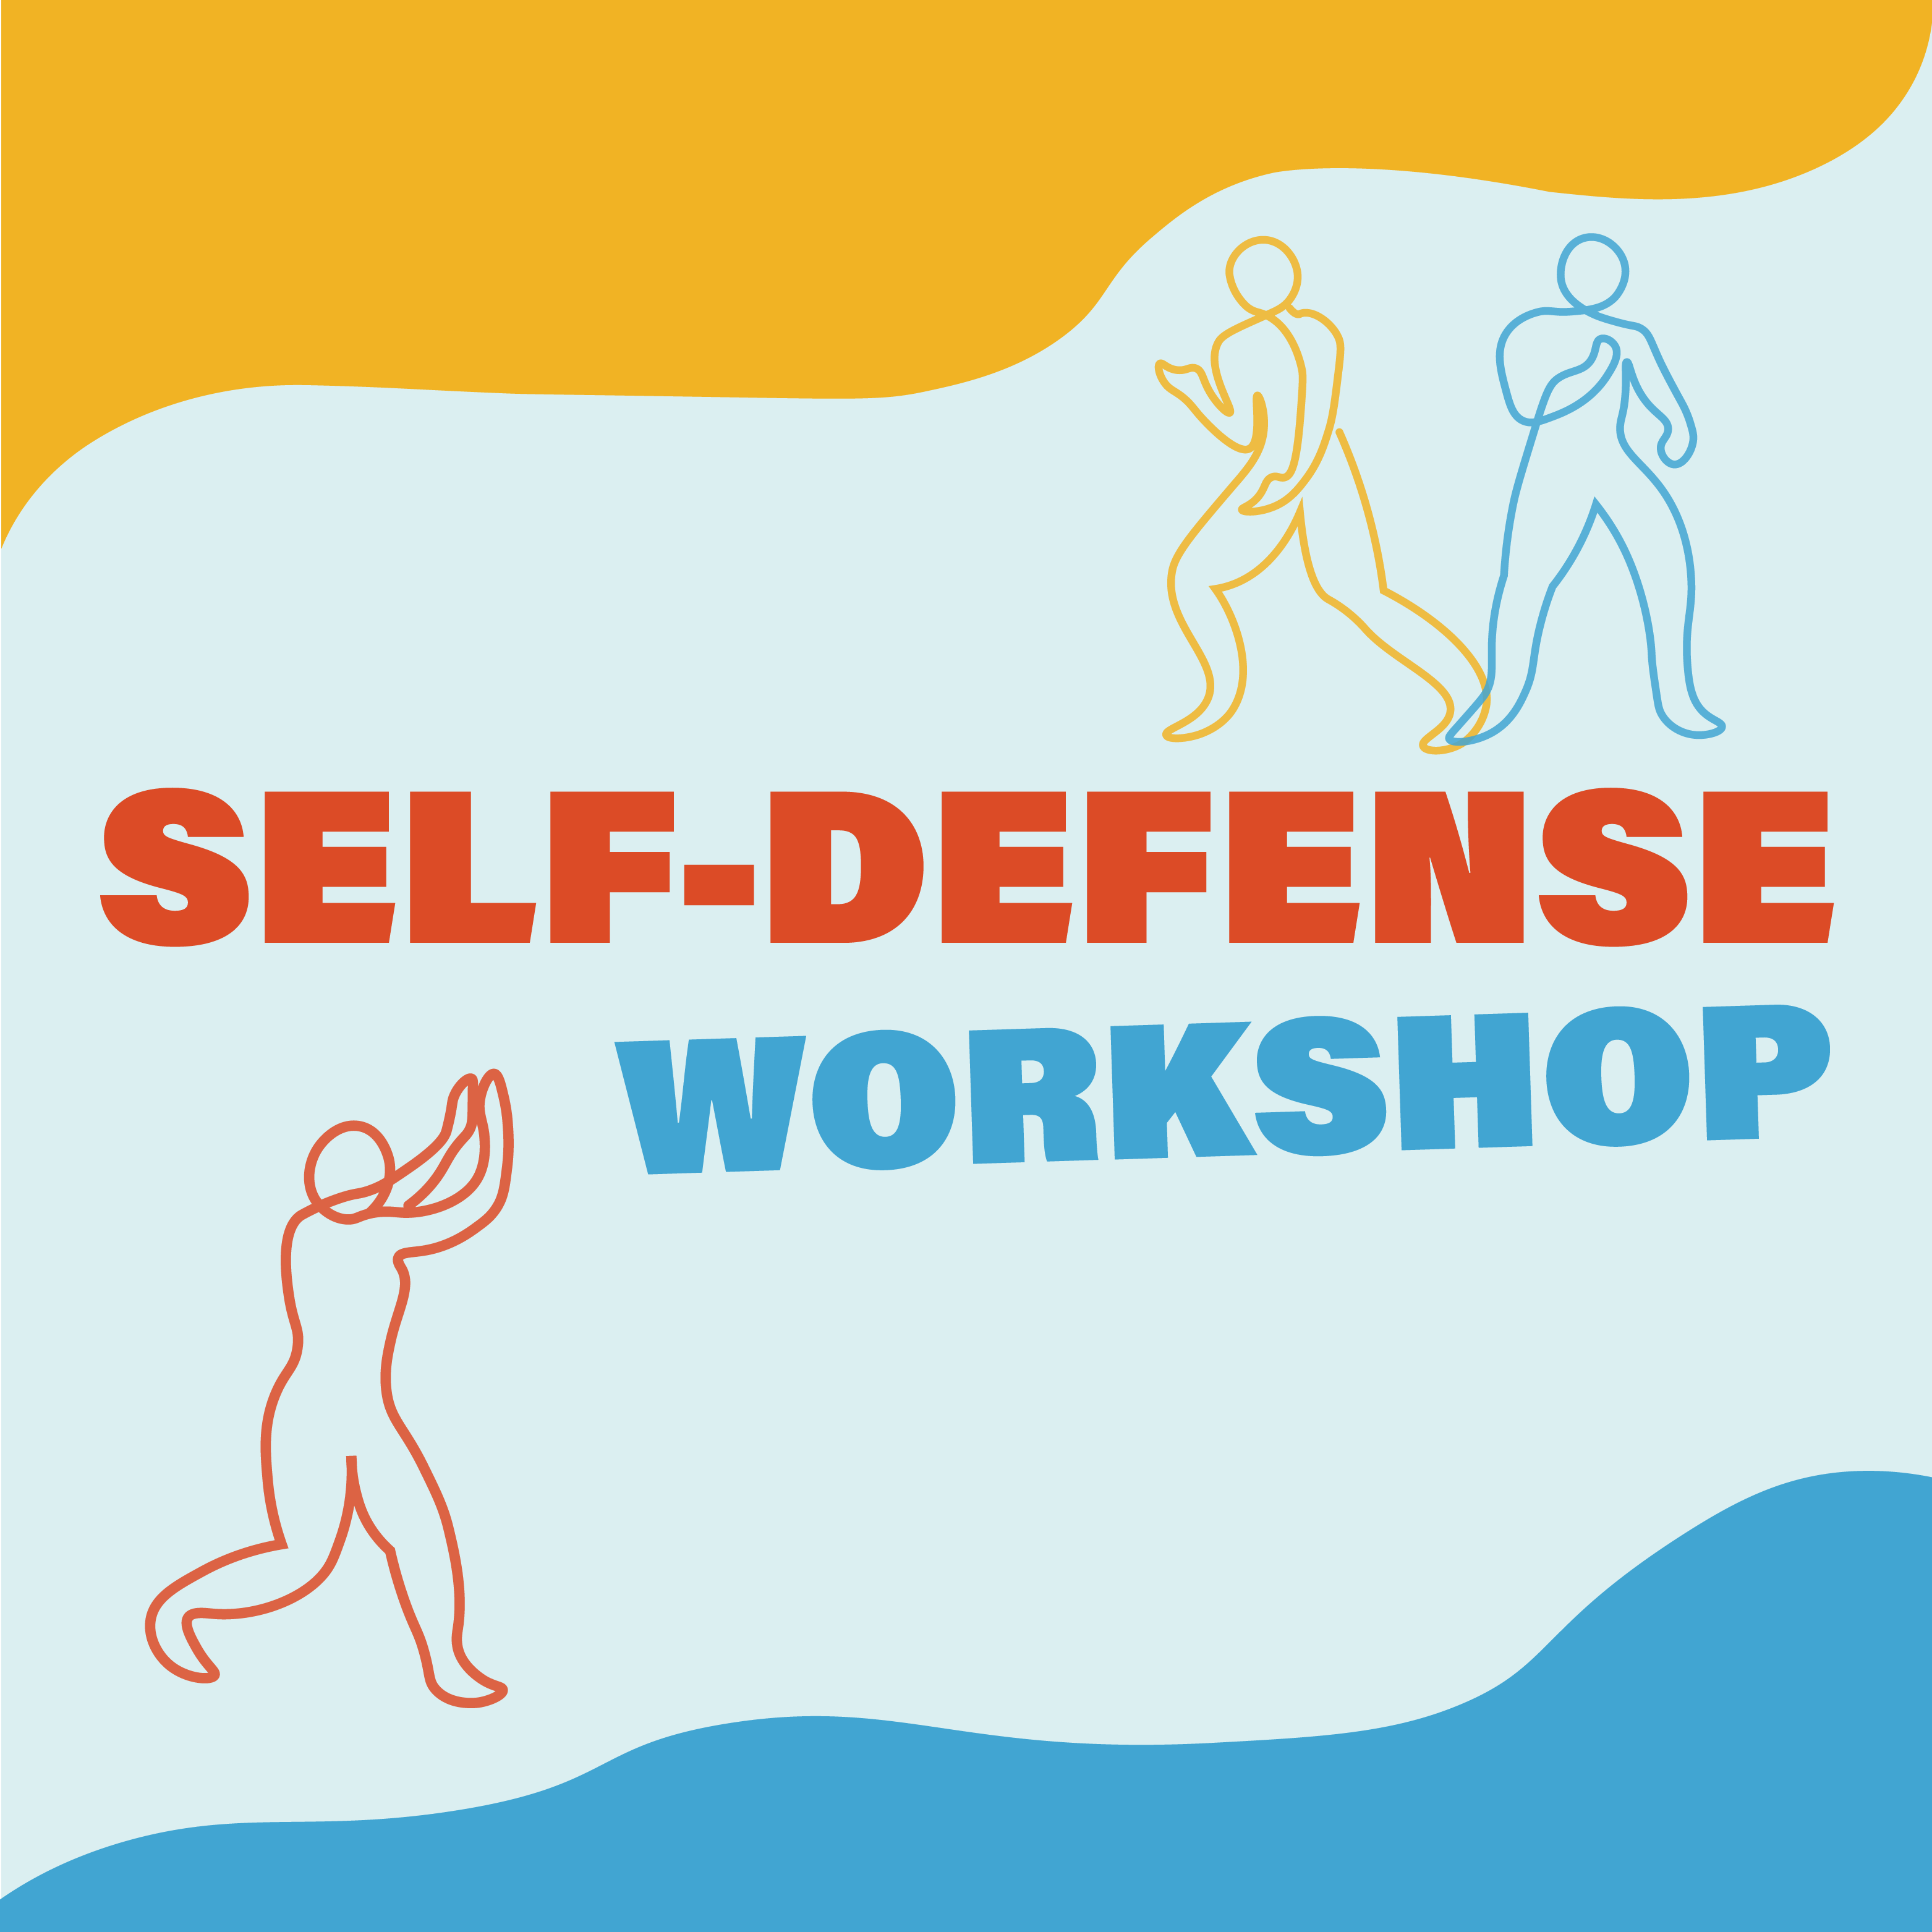 Self defense workshop